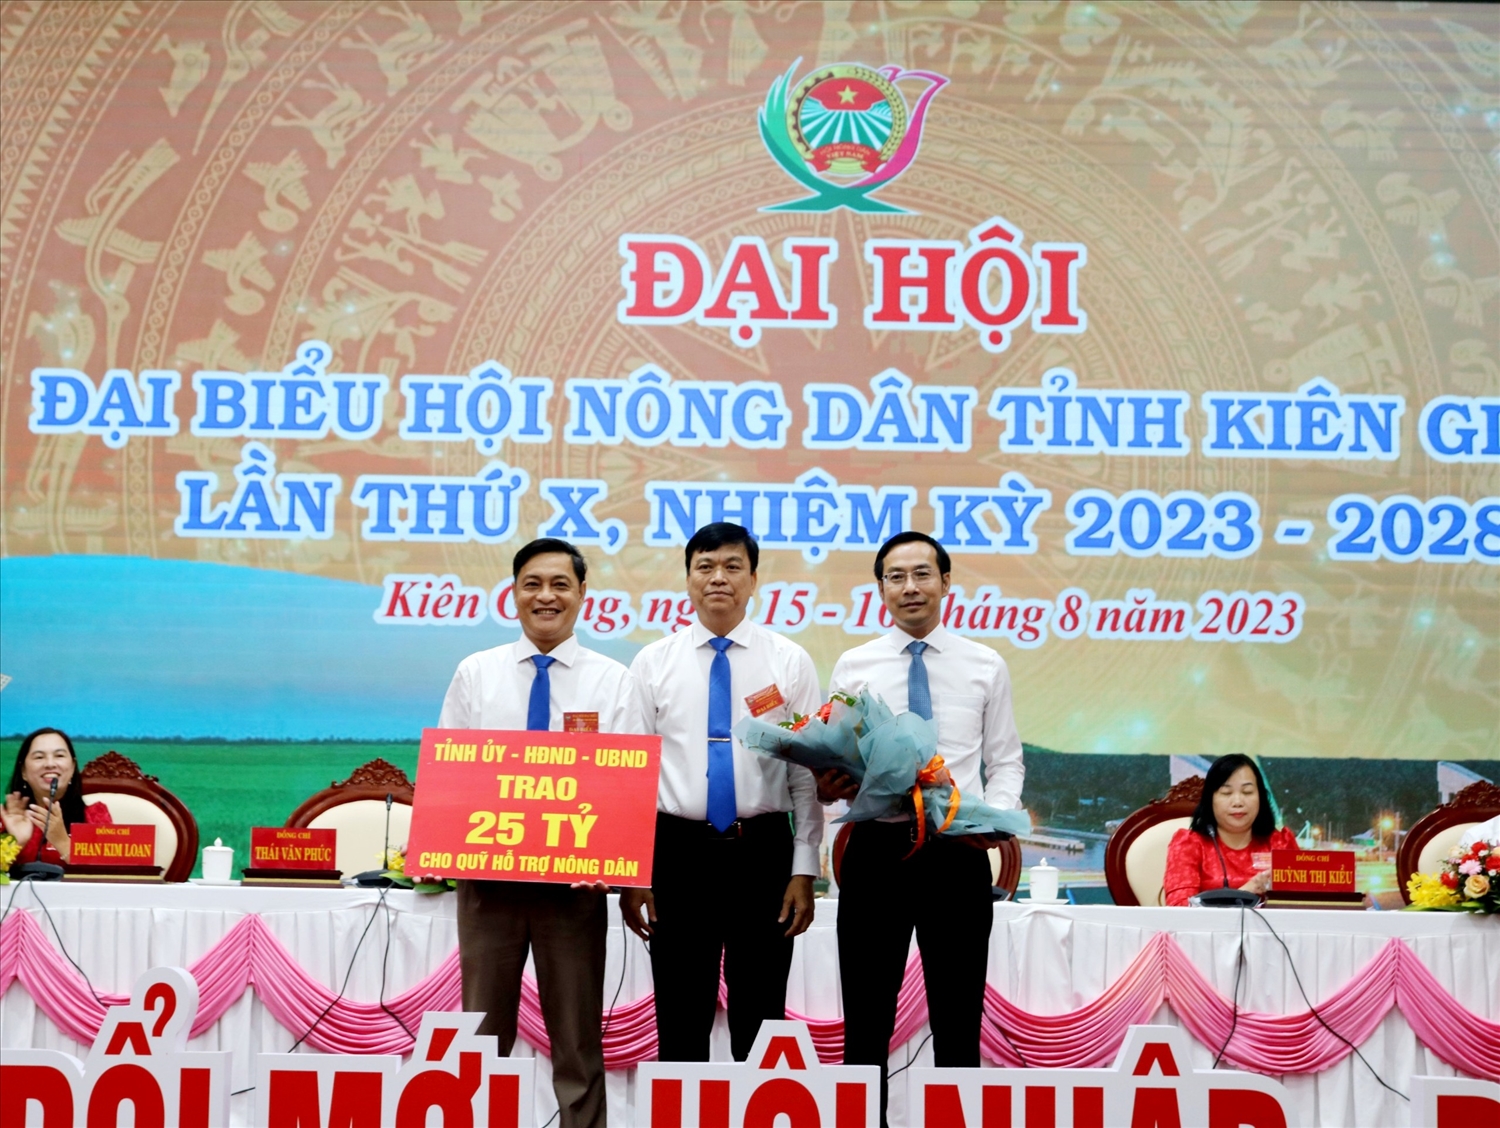 Tỉnh ủy, HĐND, UBND tỉnh Kiên Giang trao 25 tỷ đồng nguồn ngân sách bổ sung Quỹ Hỗ trợ nông dân cho Hội Nông dân tỉnh Kiên Giang